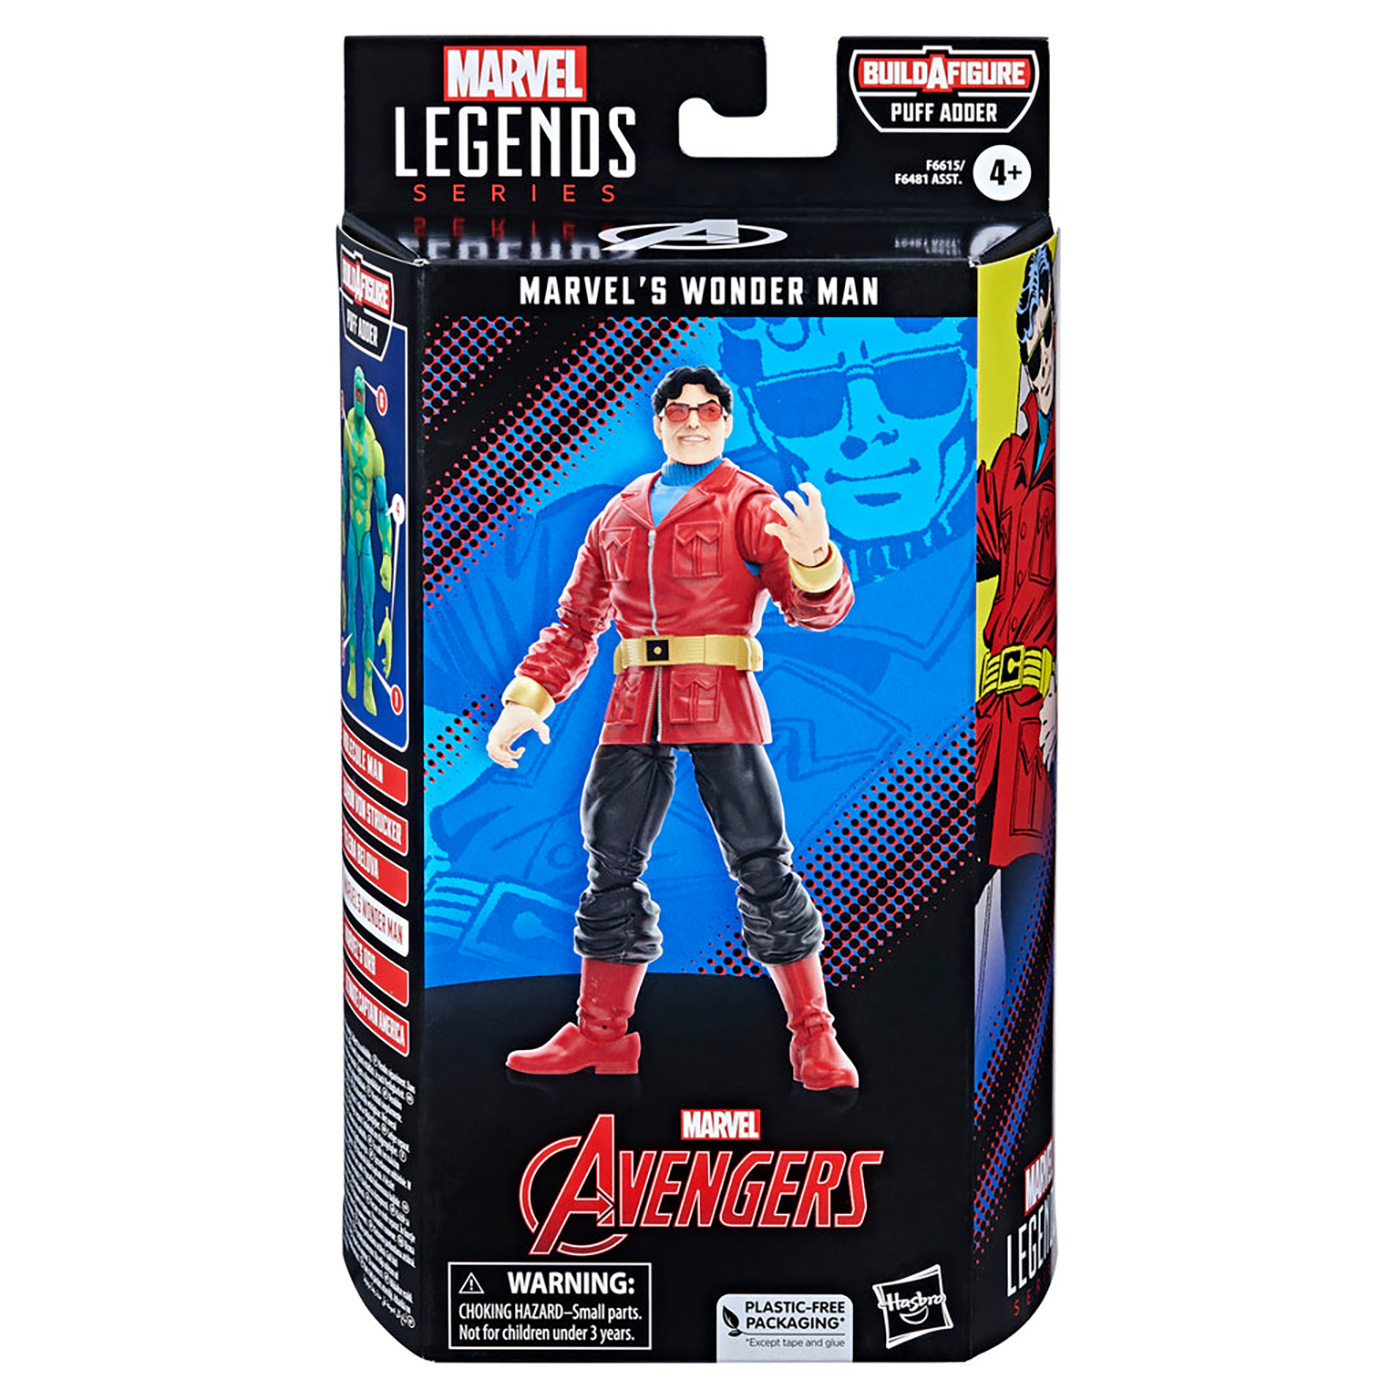 Marvel Legends BAF Puff Adder Avengers Marvel's Wonder Man Comic 6-Inch Action Figure画像